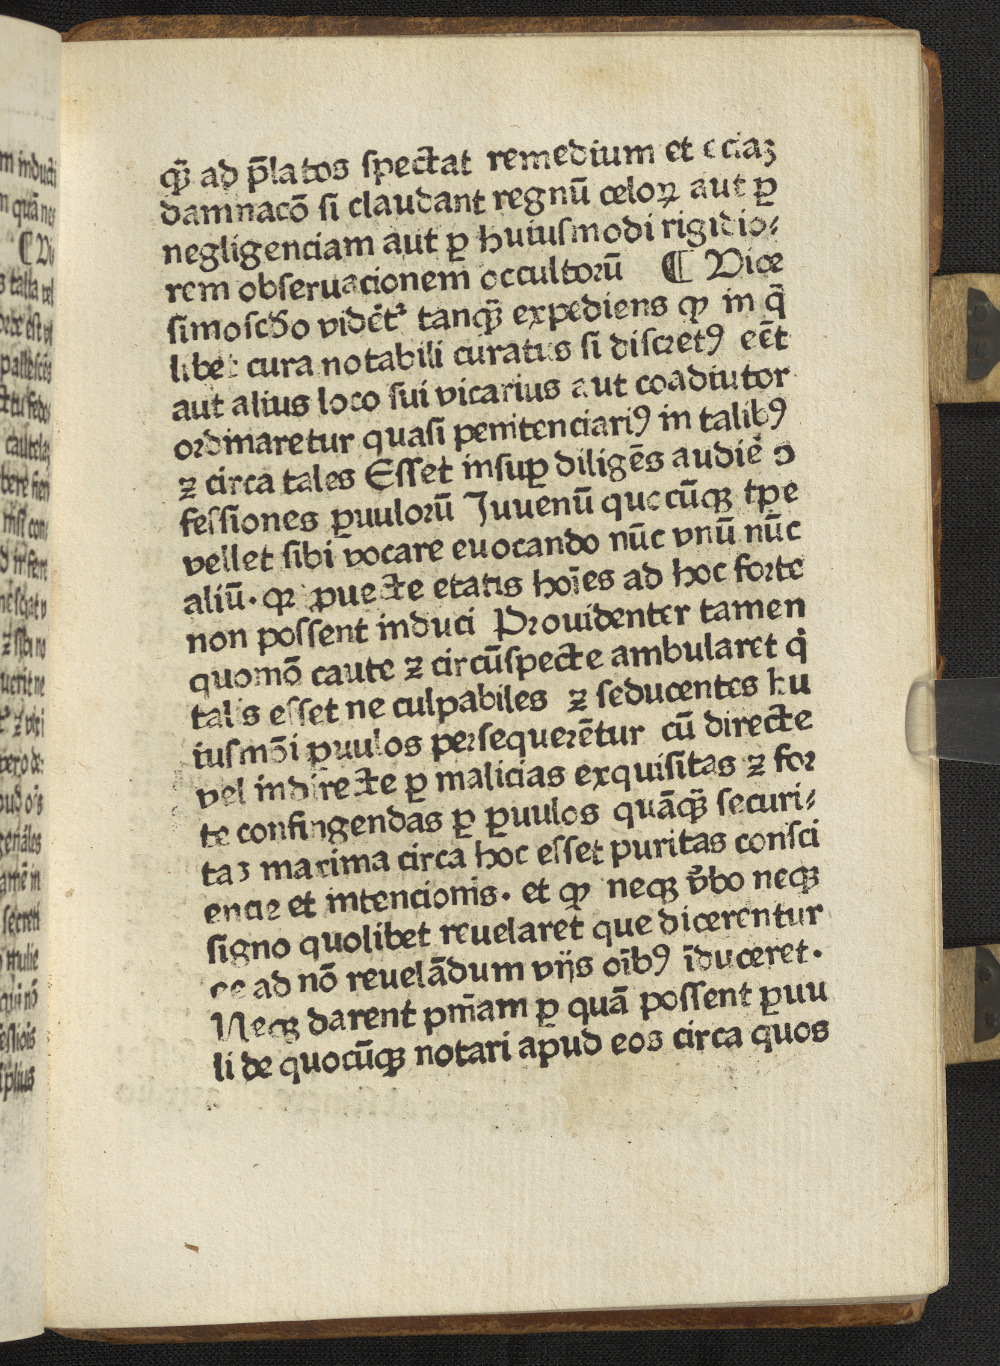 Das Bild zeigt einen schiefen Textblock eines lateinischen Drucks von um 1478.